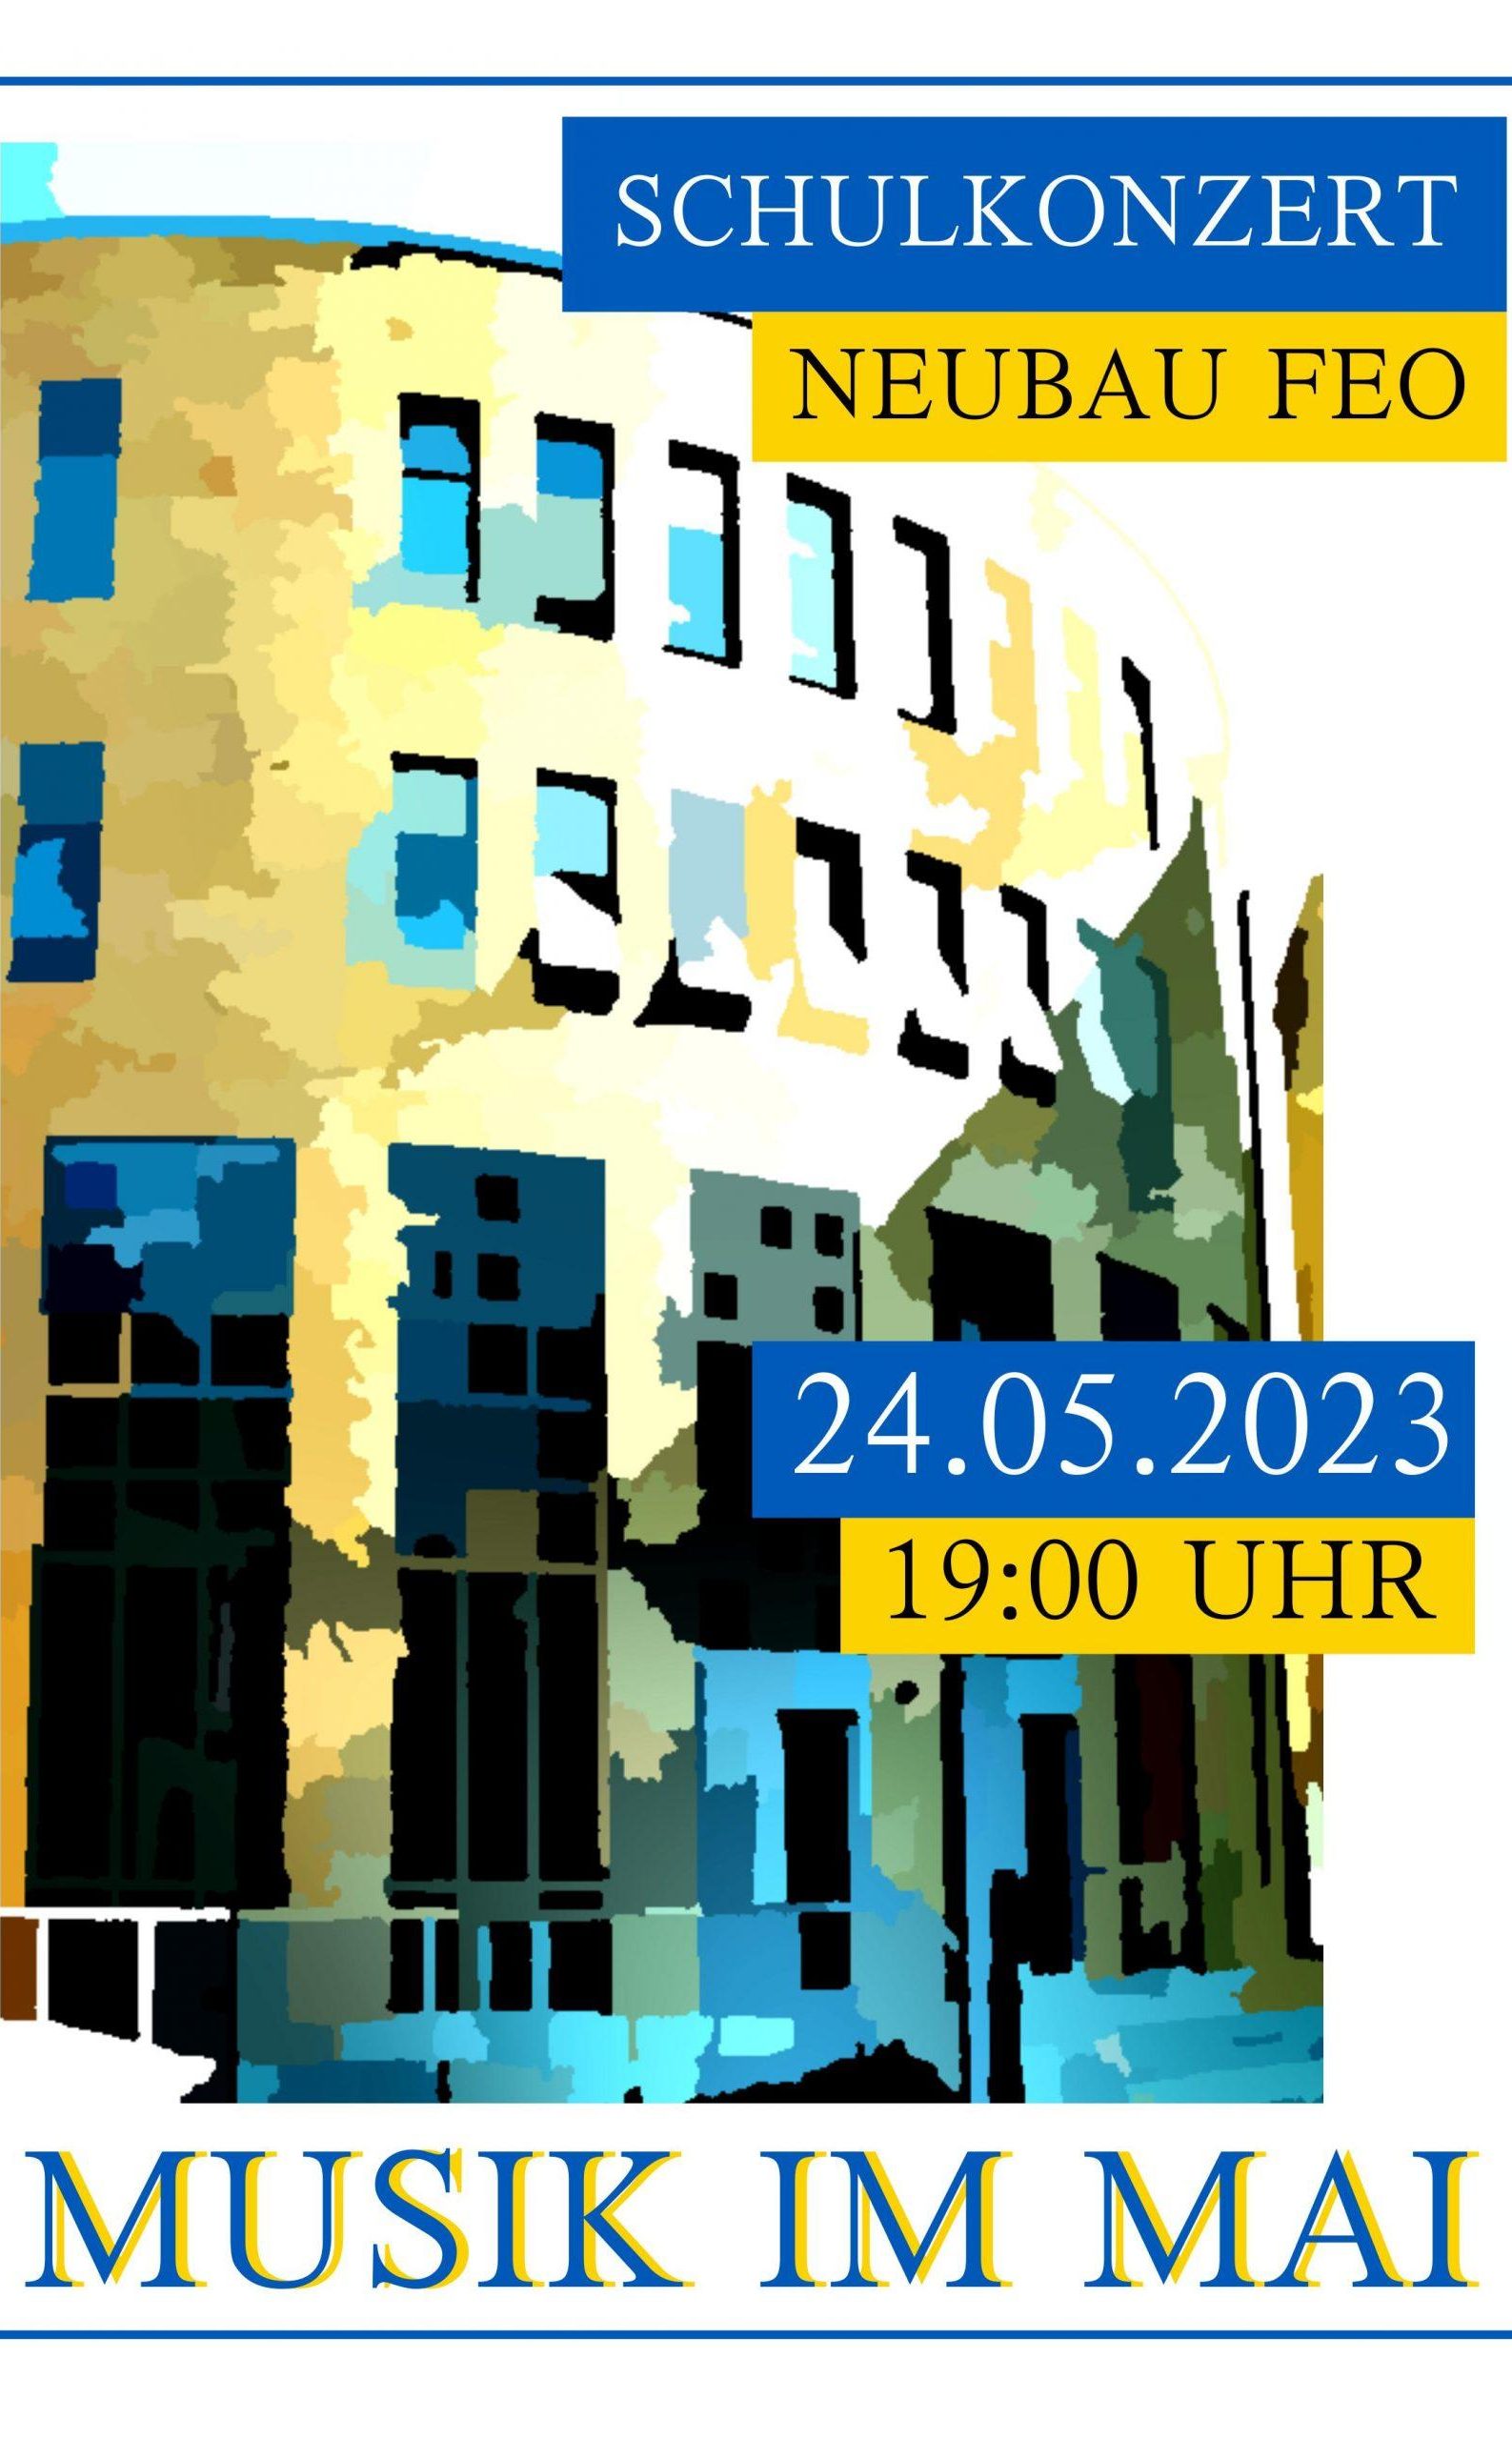 Das blau-gelb gestaltete Plakat für Musik im Mai 2023 zeigt den Neubau - künstlerisch verfremdet durch Posterisierung.